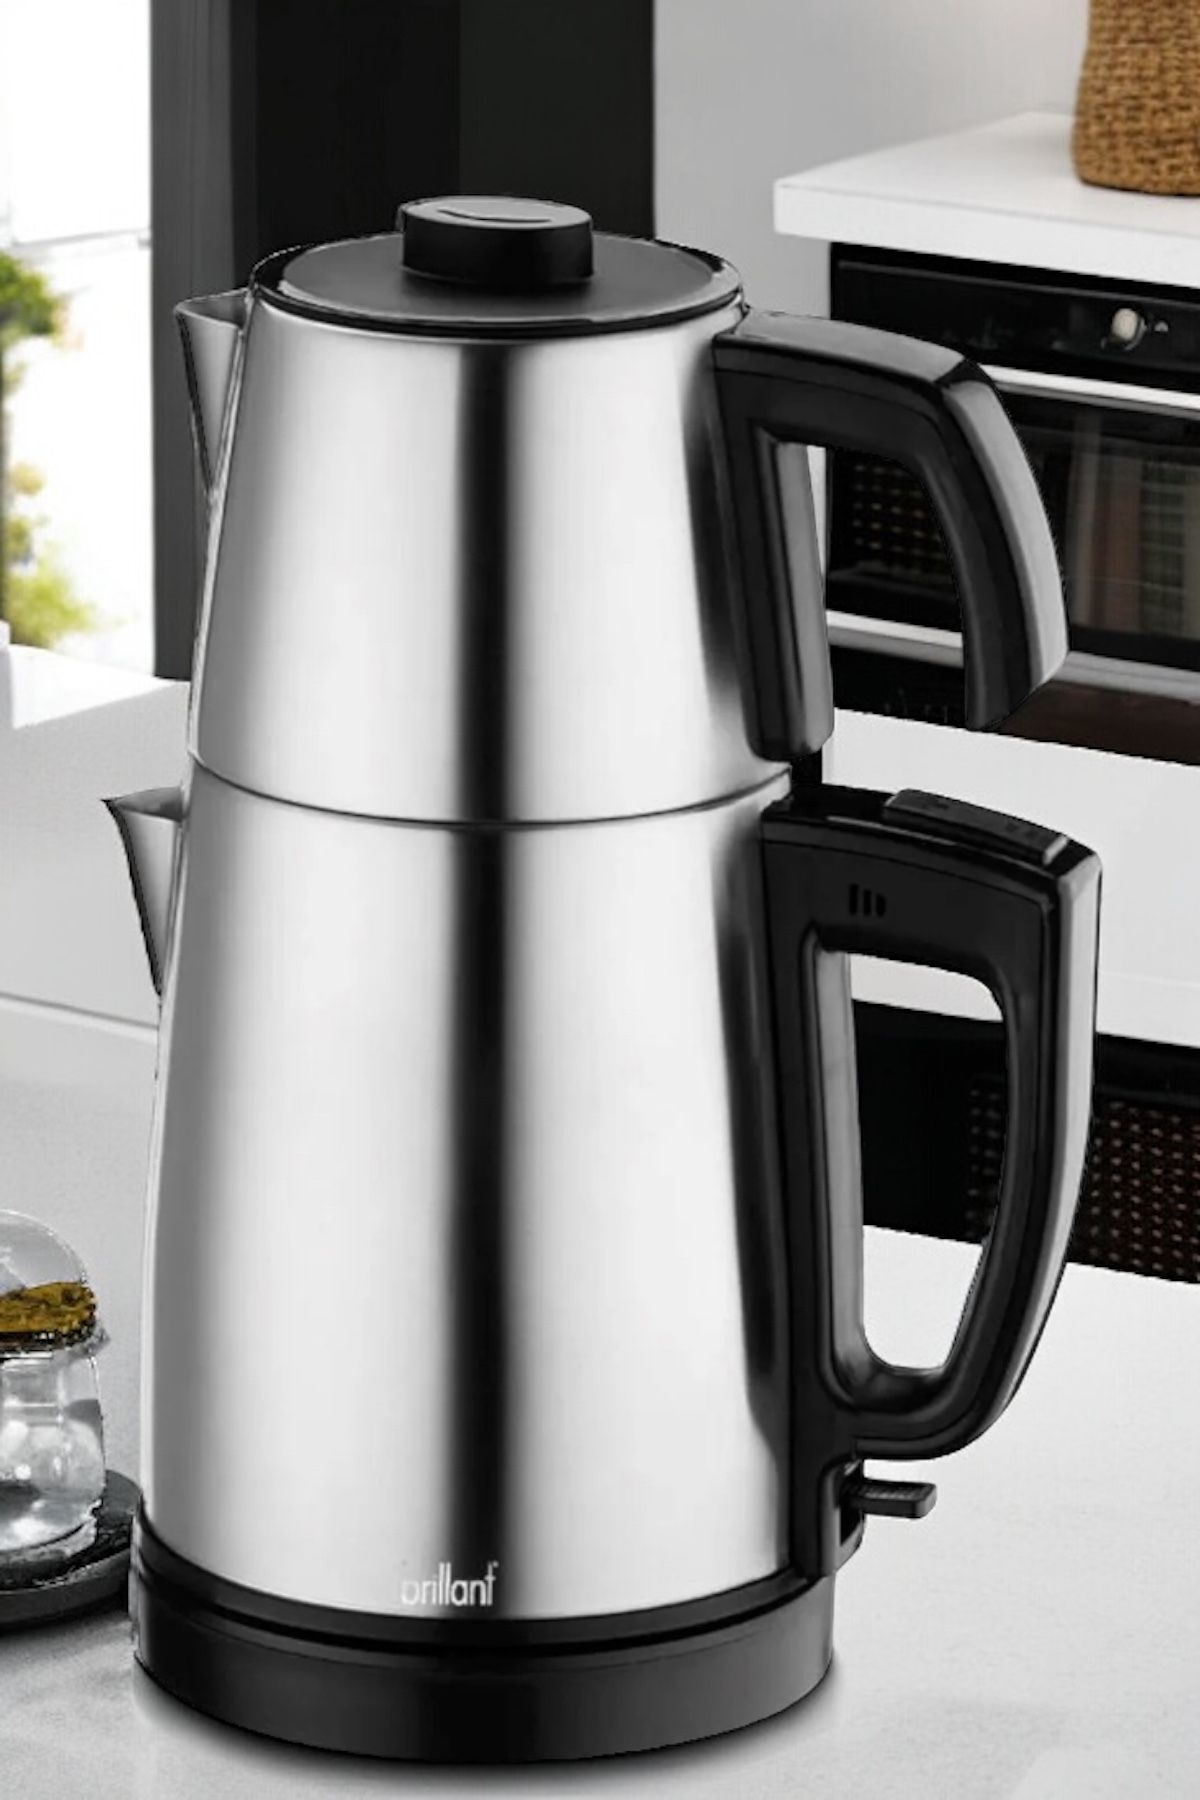 Brillant Inox 30 Bardaklık 2200 Watt Geniş Hazneli Paslanmaz Çelik Çay Makinesi Ve Su Isıtıcısı